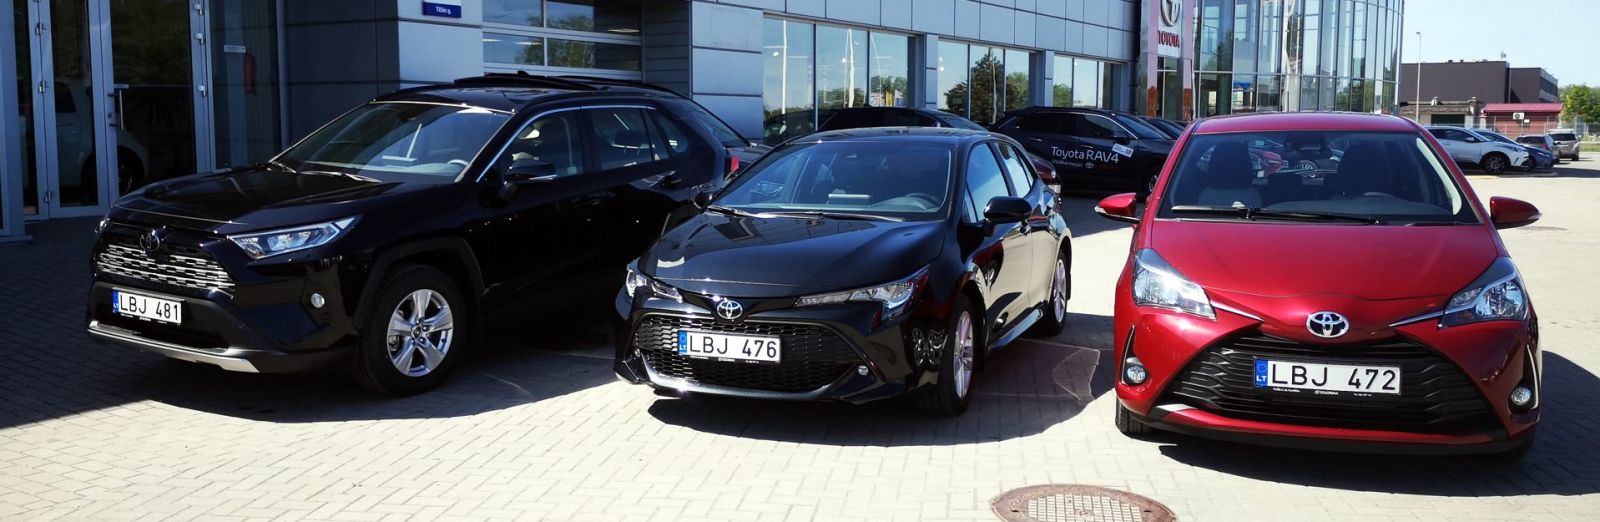 Аренда авто Клайпеда: новые Тойоты компании EuroRenta.lt